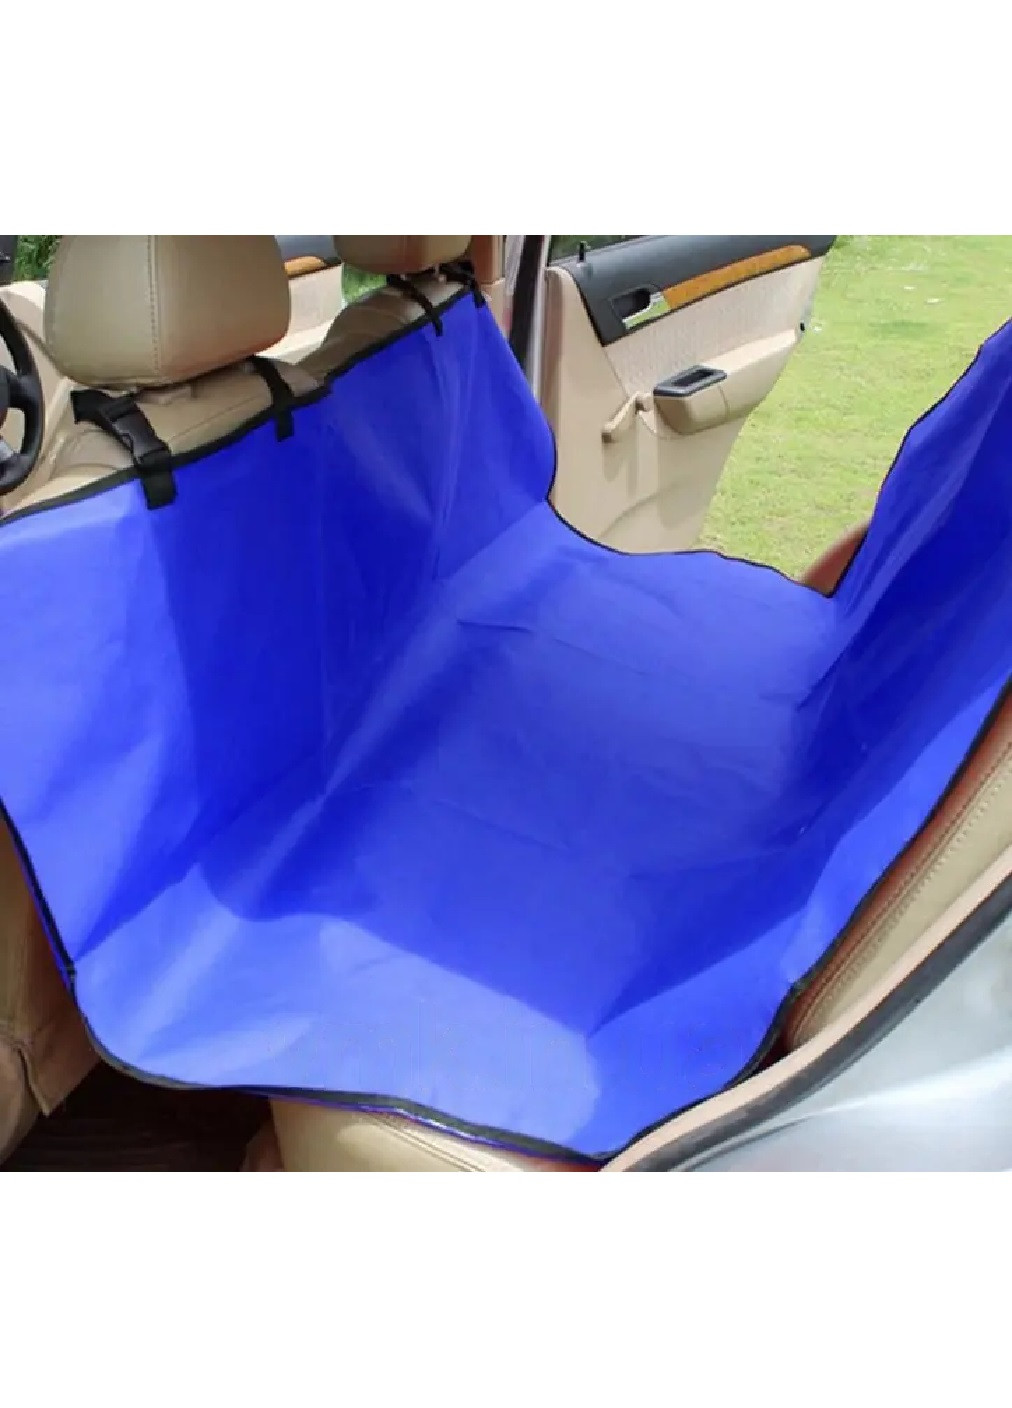 Автомобільний гамак накидка чохол на заднє сидіння авто для перевезення тварин собак котів 134х132 см (473858-Prob) Синій Unbranded (256675429)